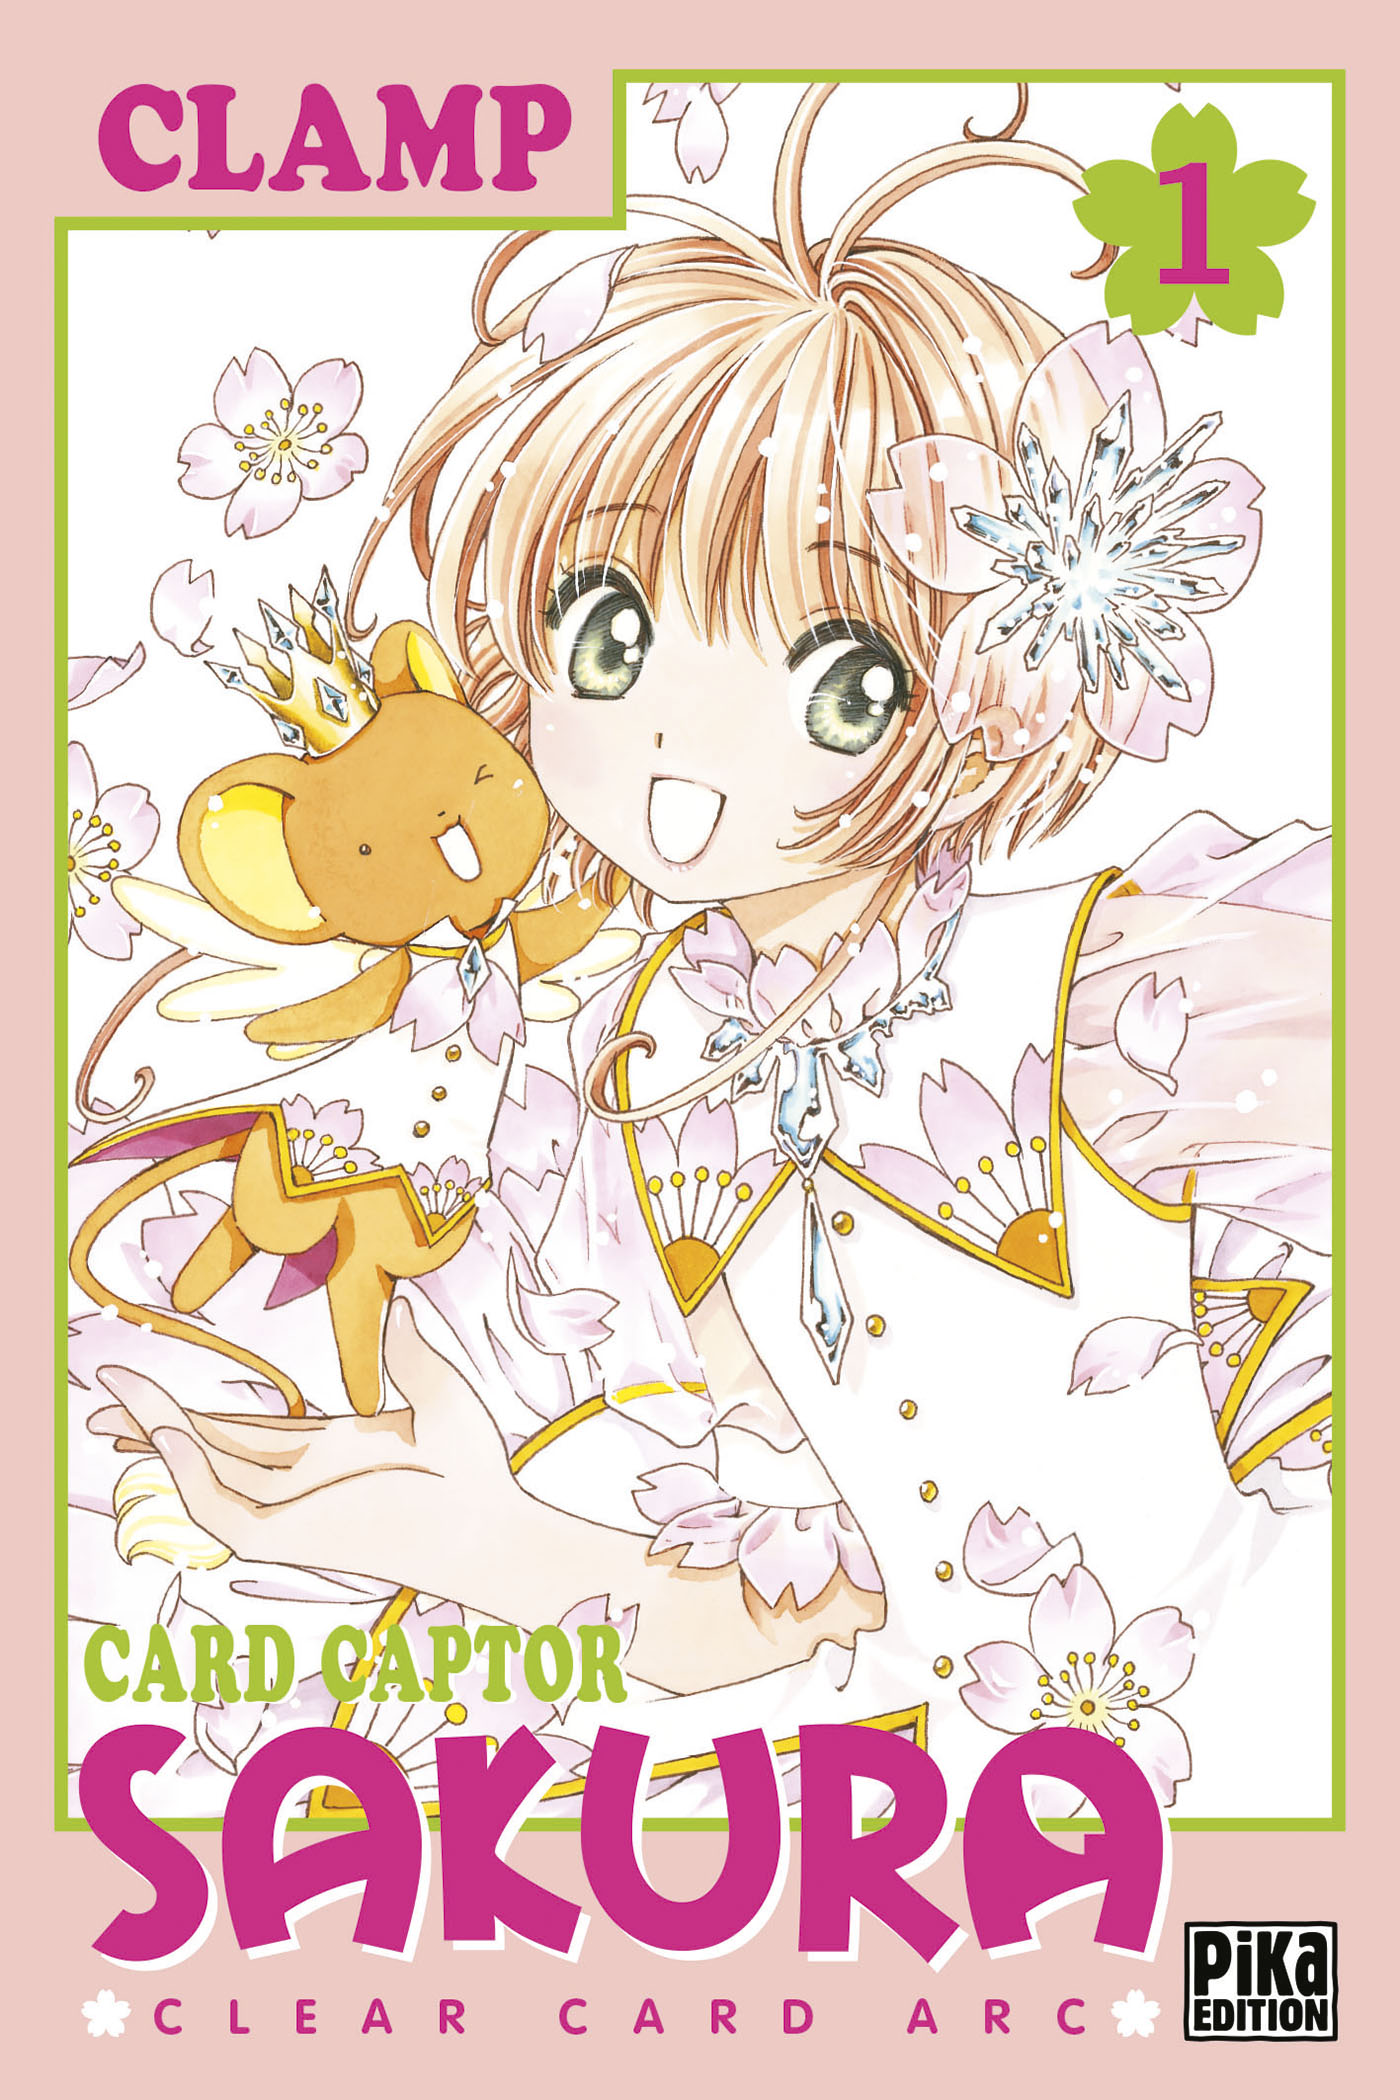 RÃ©sultat de recherche d'images pour "card captor sakura clear card vol 1"